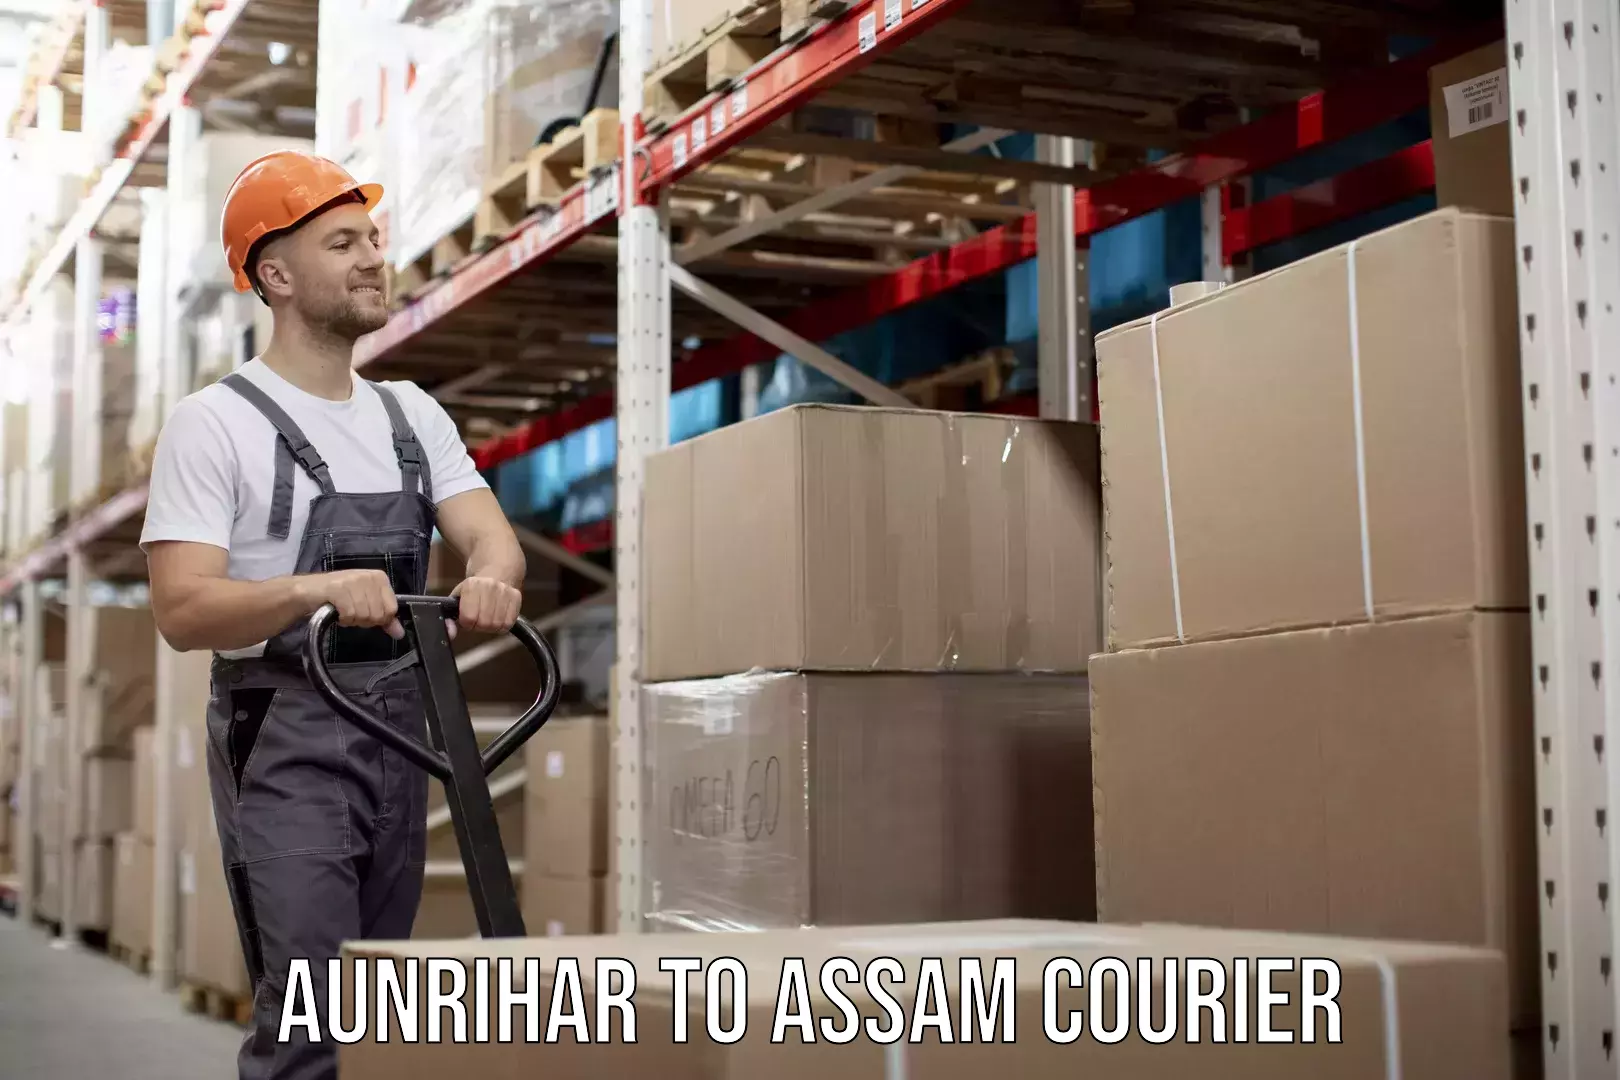 Courier service comparison Aunrihar to Assam